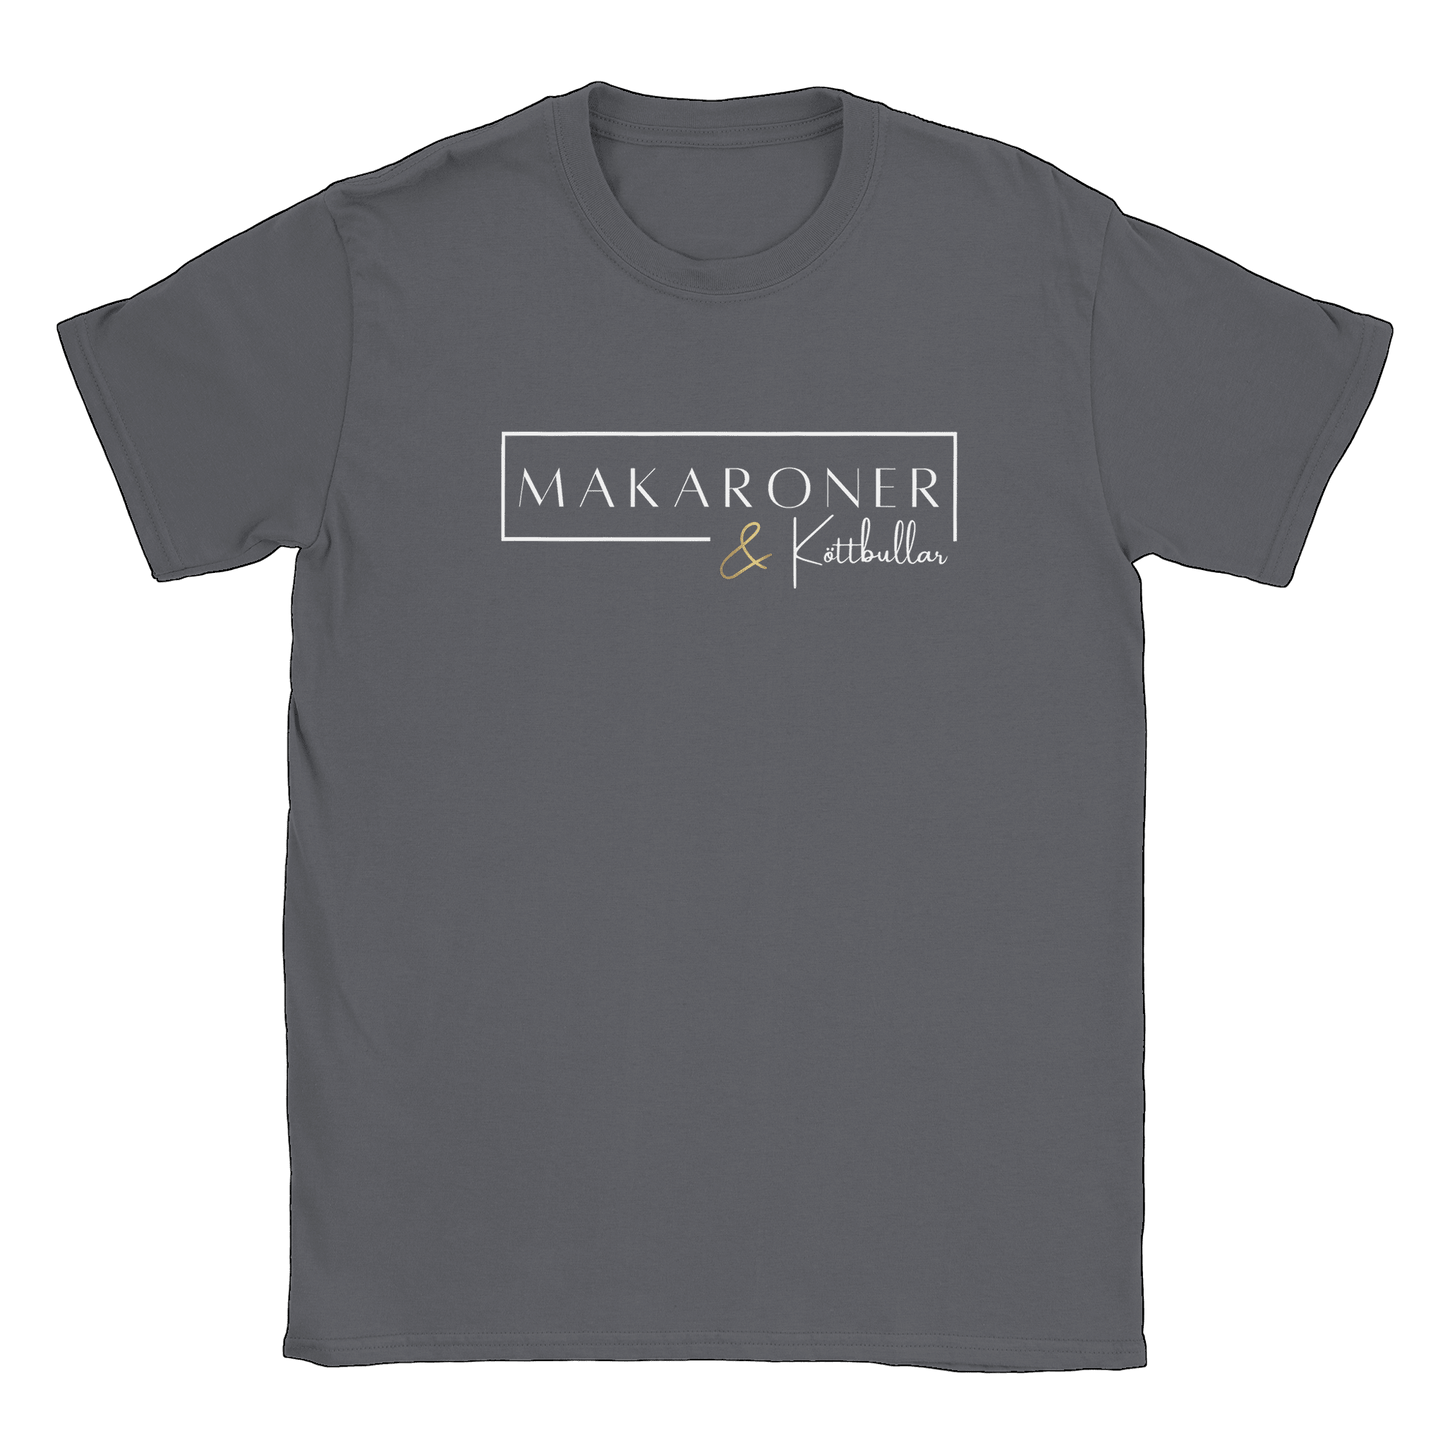 Makaroner och Köttbullar - T-shirt Charcoal